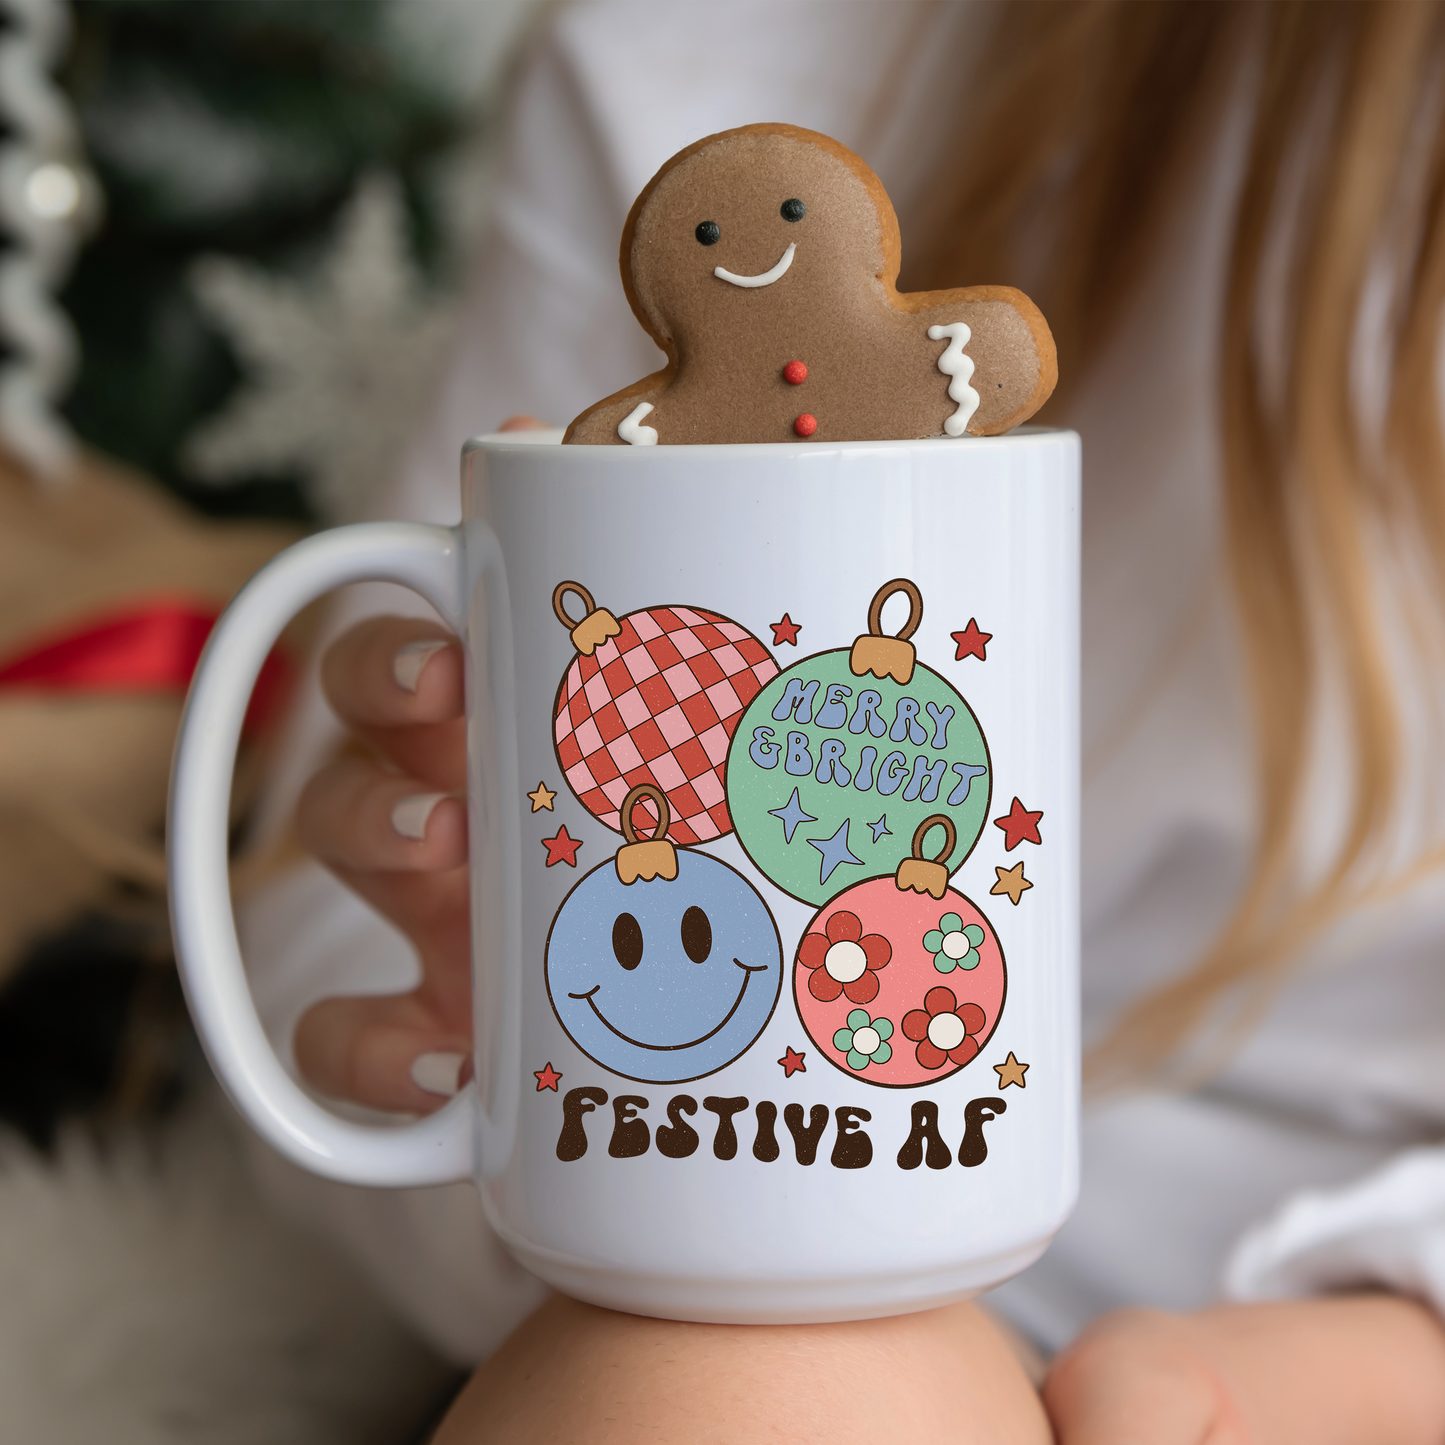 Festive AF Mug